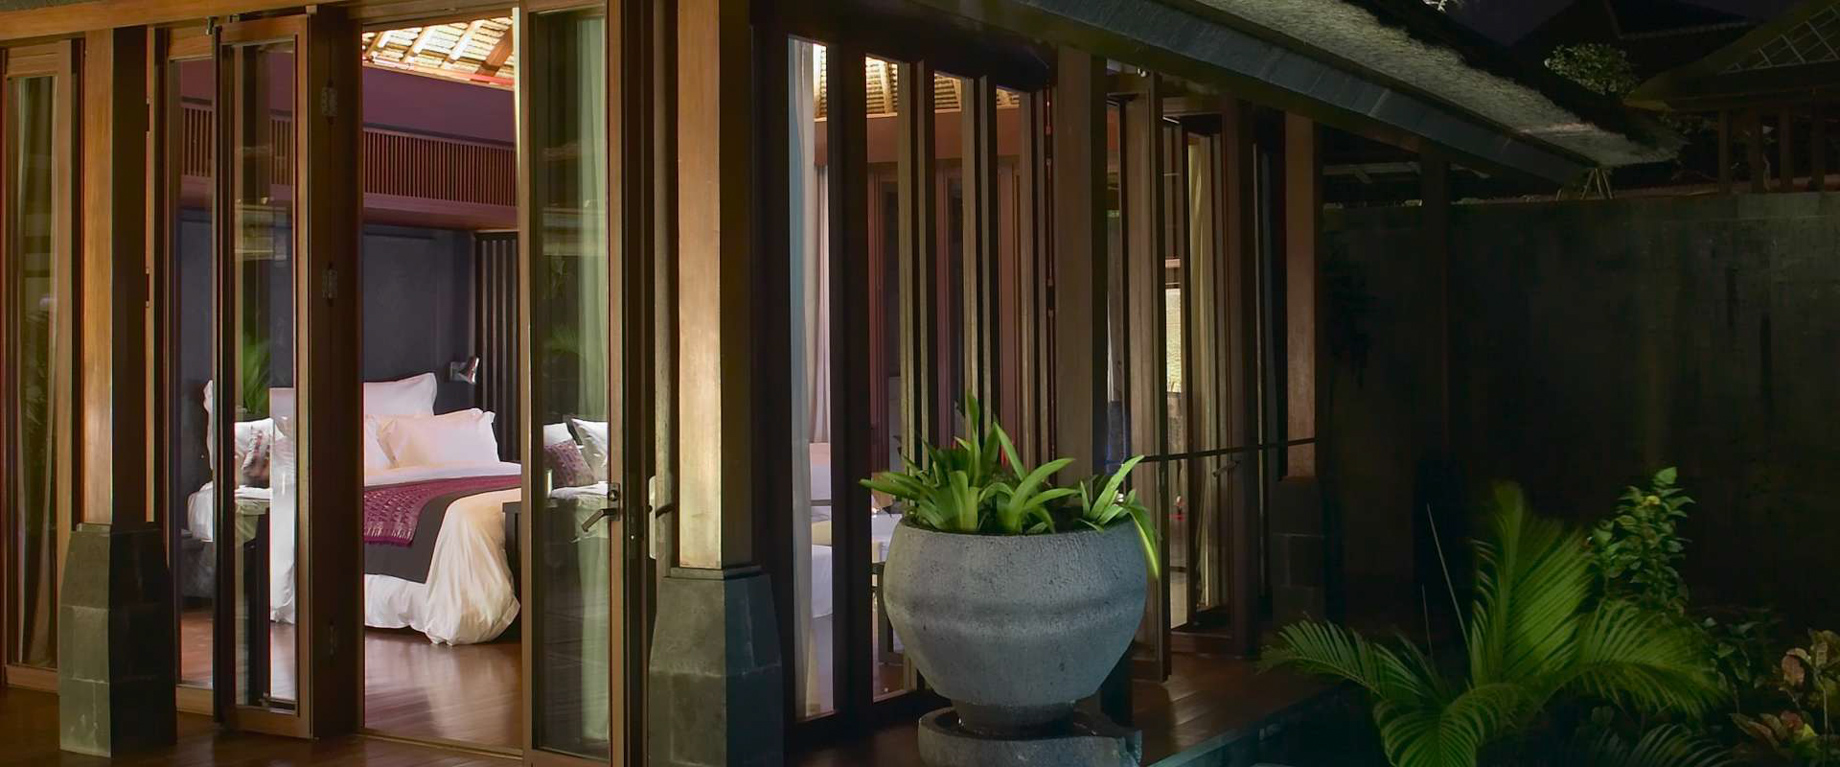 Bvlgari Resort Bali – Uluwatu, Bali, Indonesia – Ocean View Villa Bedroom